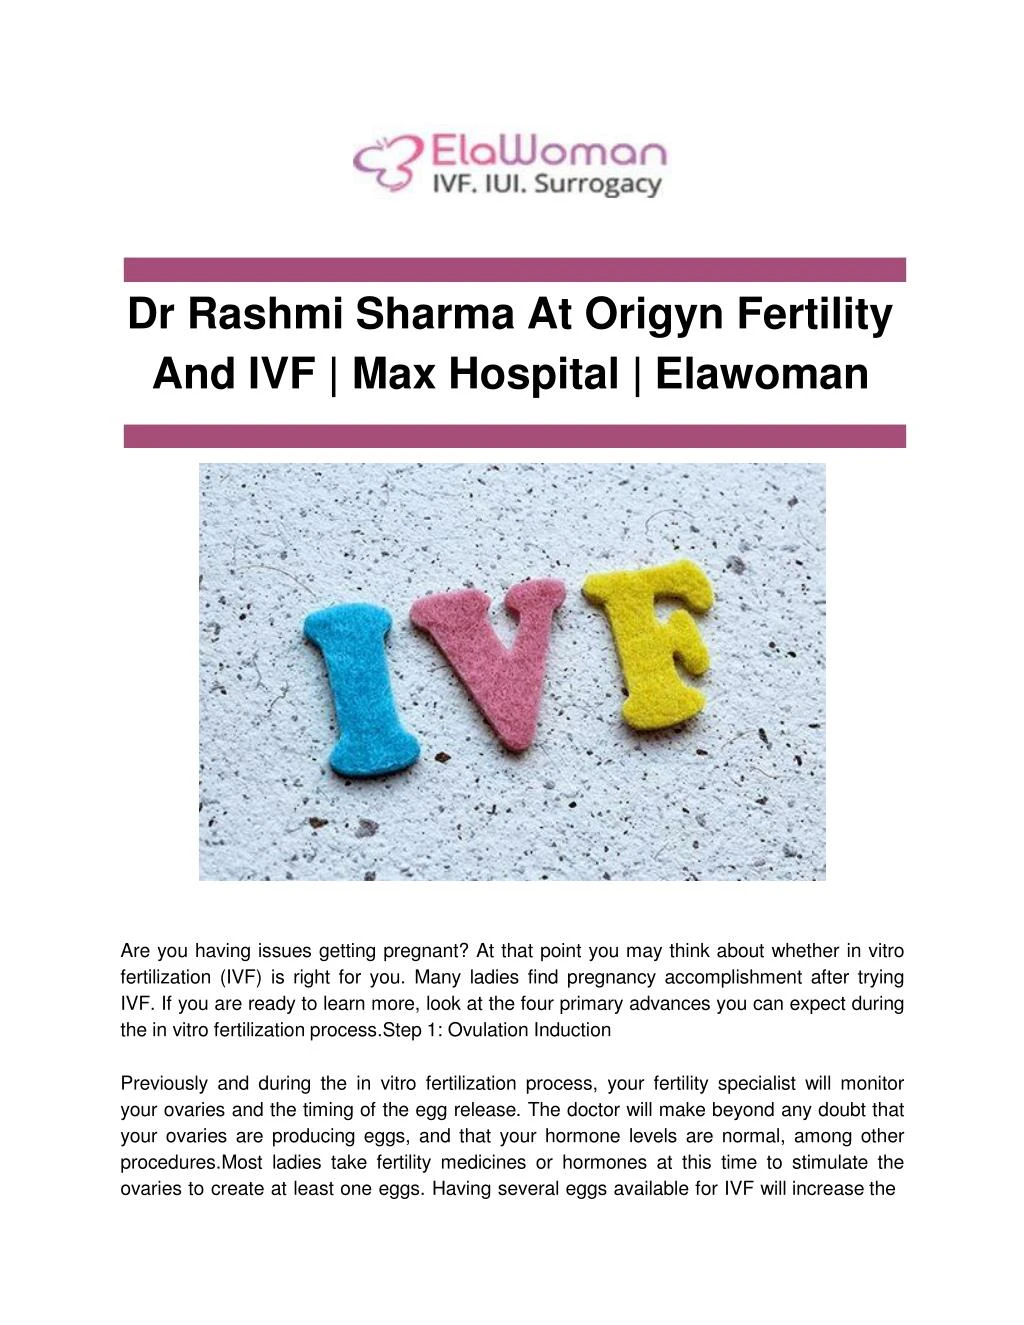 dr rashmi sharma at origyn fertility and ivf max hospital elawoman